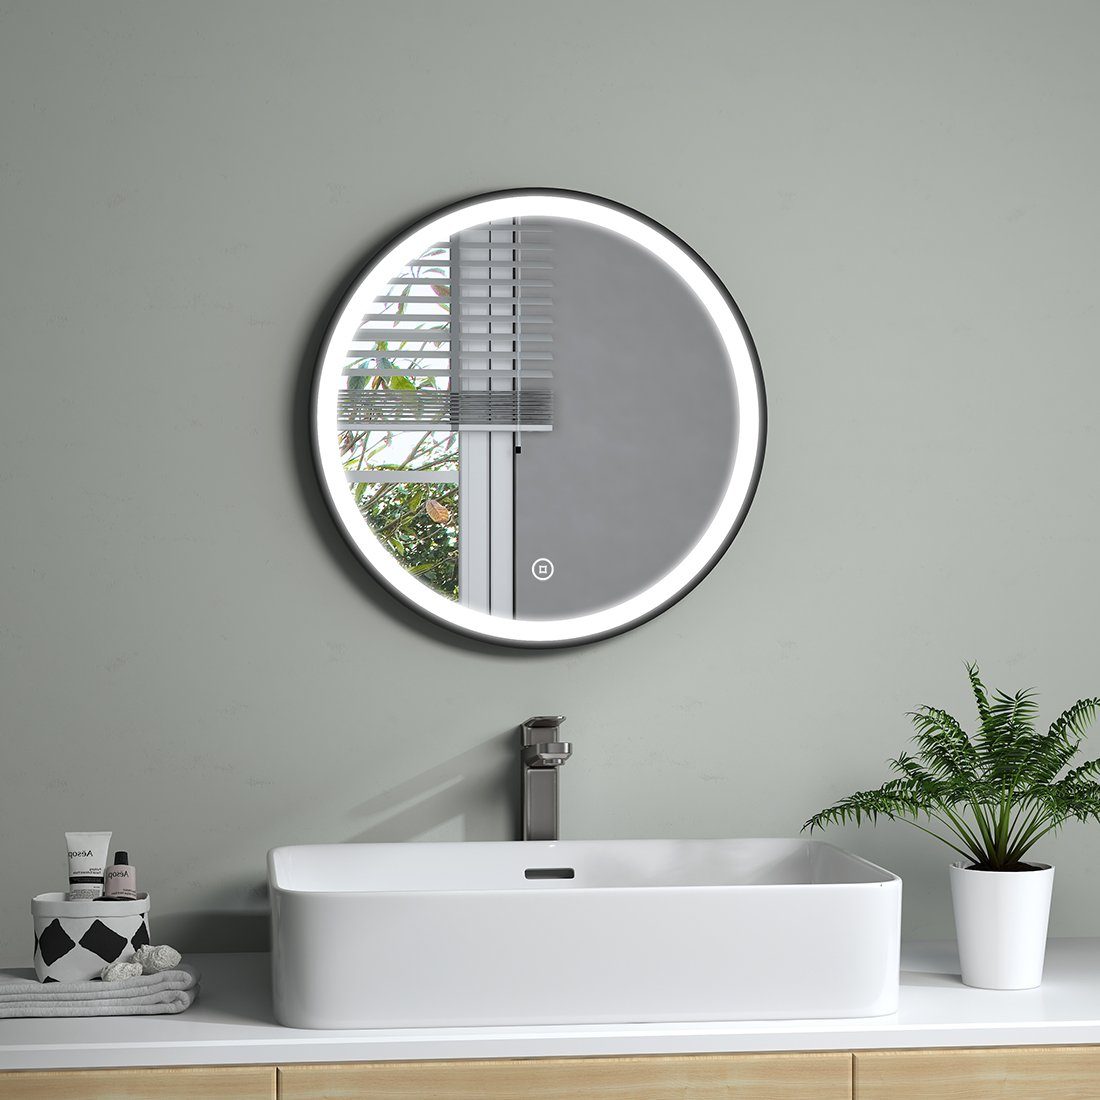 S'AFIELINA Badspiegel LED Badspiegel mit Helligkeit,Energiesparend,IP44 Badezimmerspiegel Touch-Schalter,6500K Beleuchtung Licht, Rund Spiegel Einstellbare